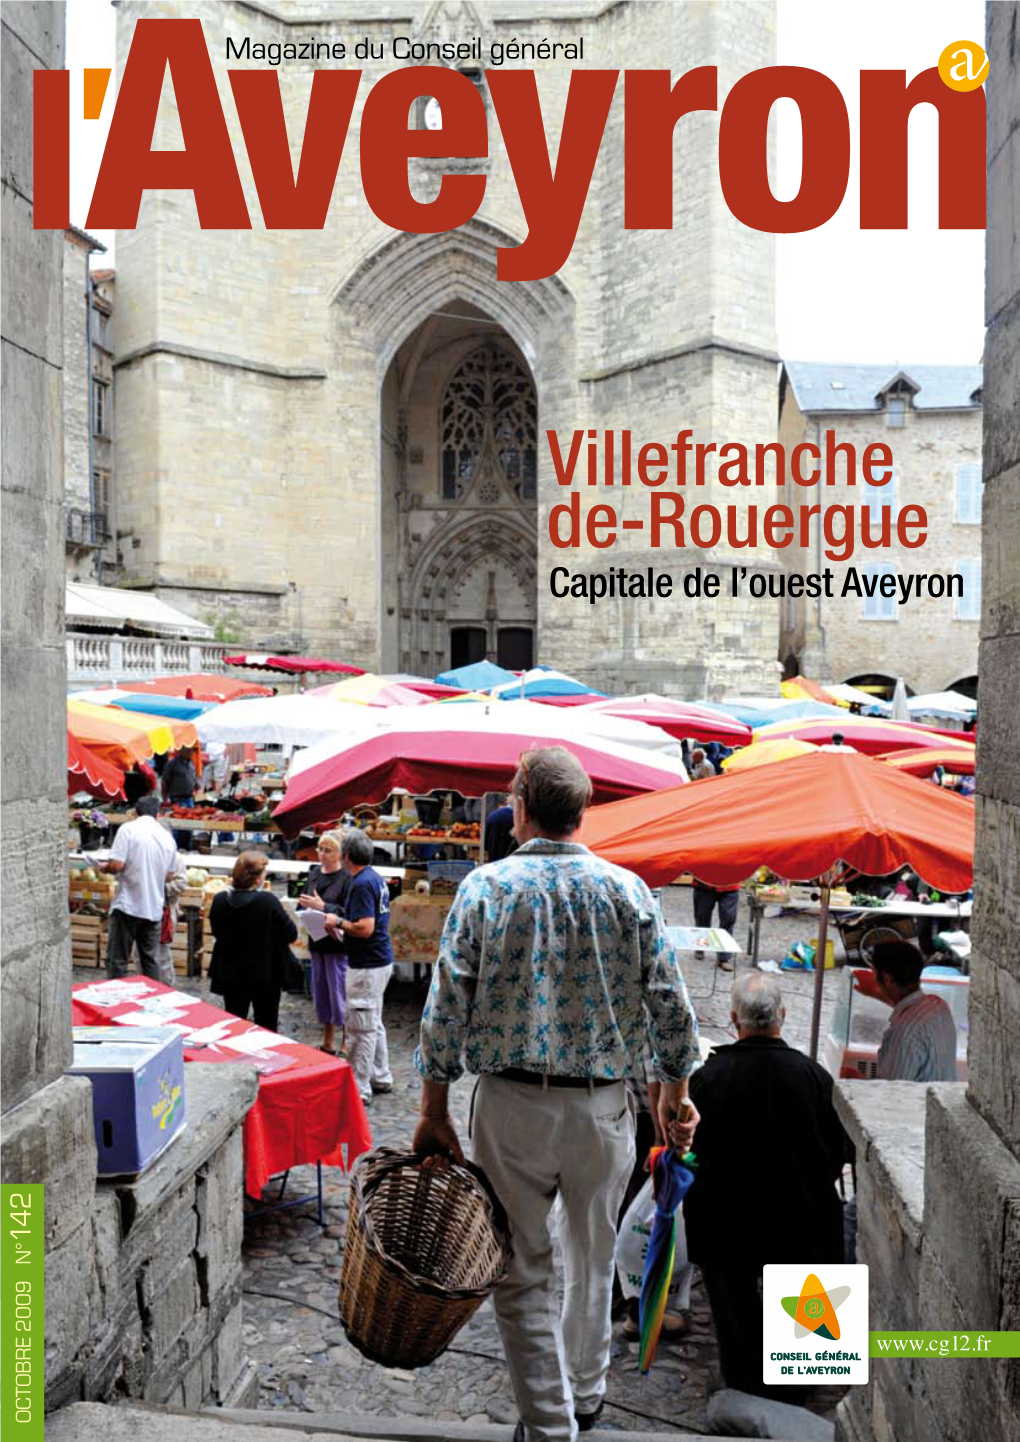 Villefranche De-Rouergue Capitale De L’Ouest Aveyron 142 OCTOBRE 2009 N° Point De Vue